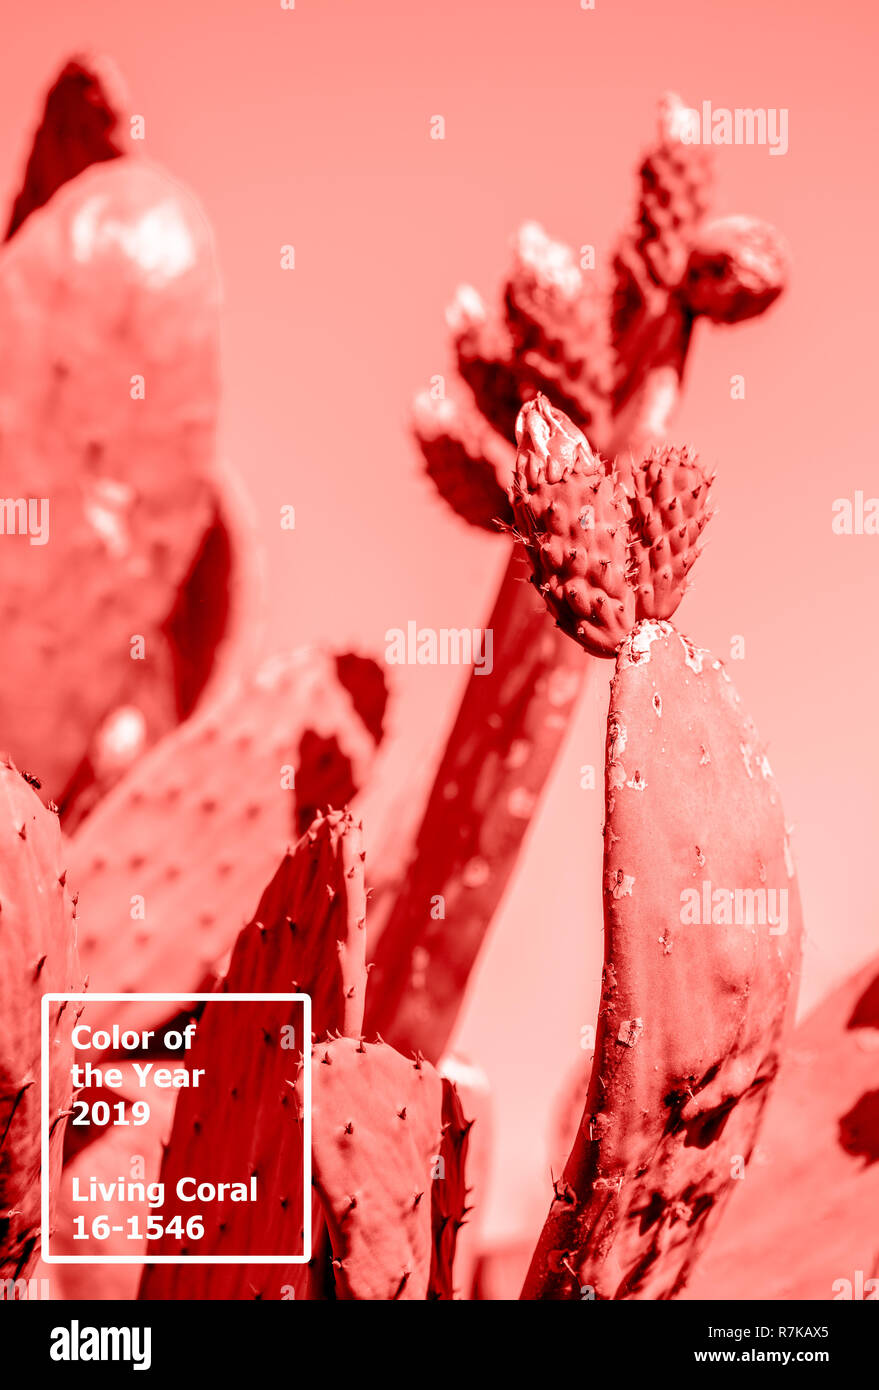 Corail vivant 2019. contexte avec cactus. Corail vivant. Couleur de l'année 2019. Banque D'Images